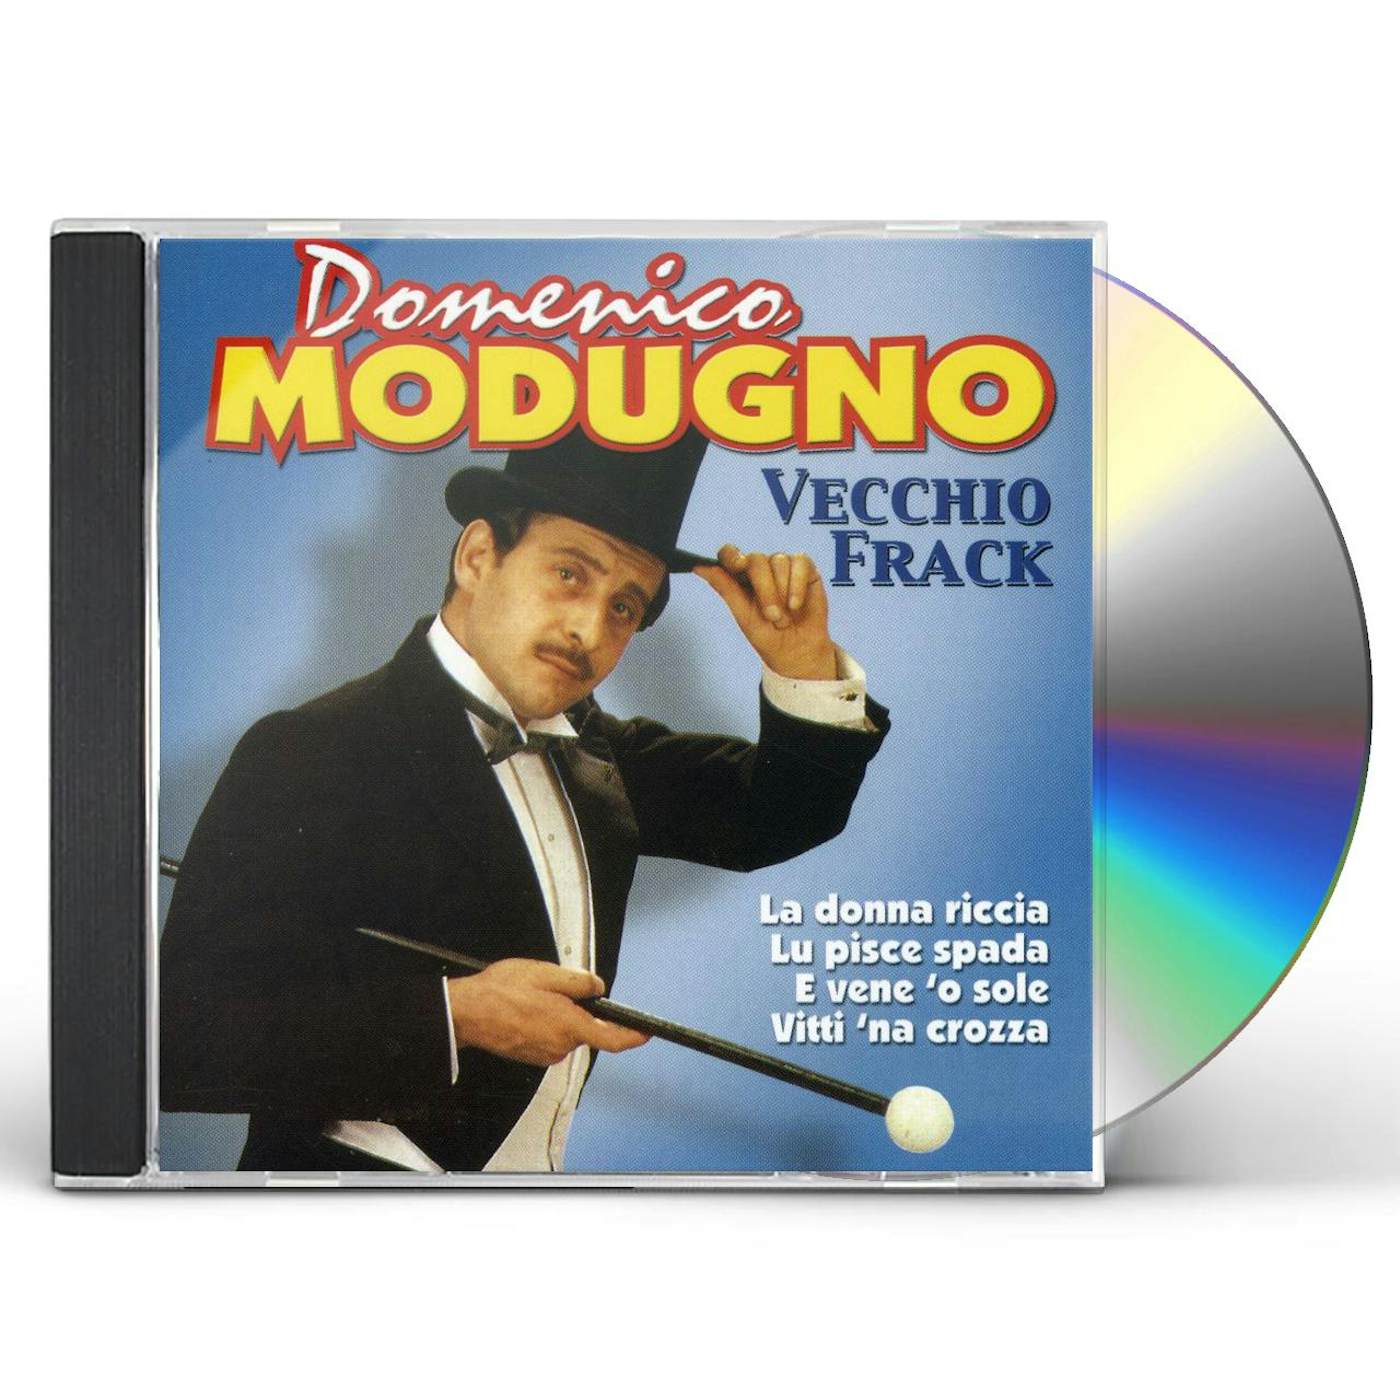 Domenico Modugno VECCHIO FRACK CD